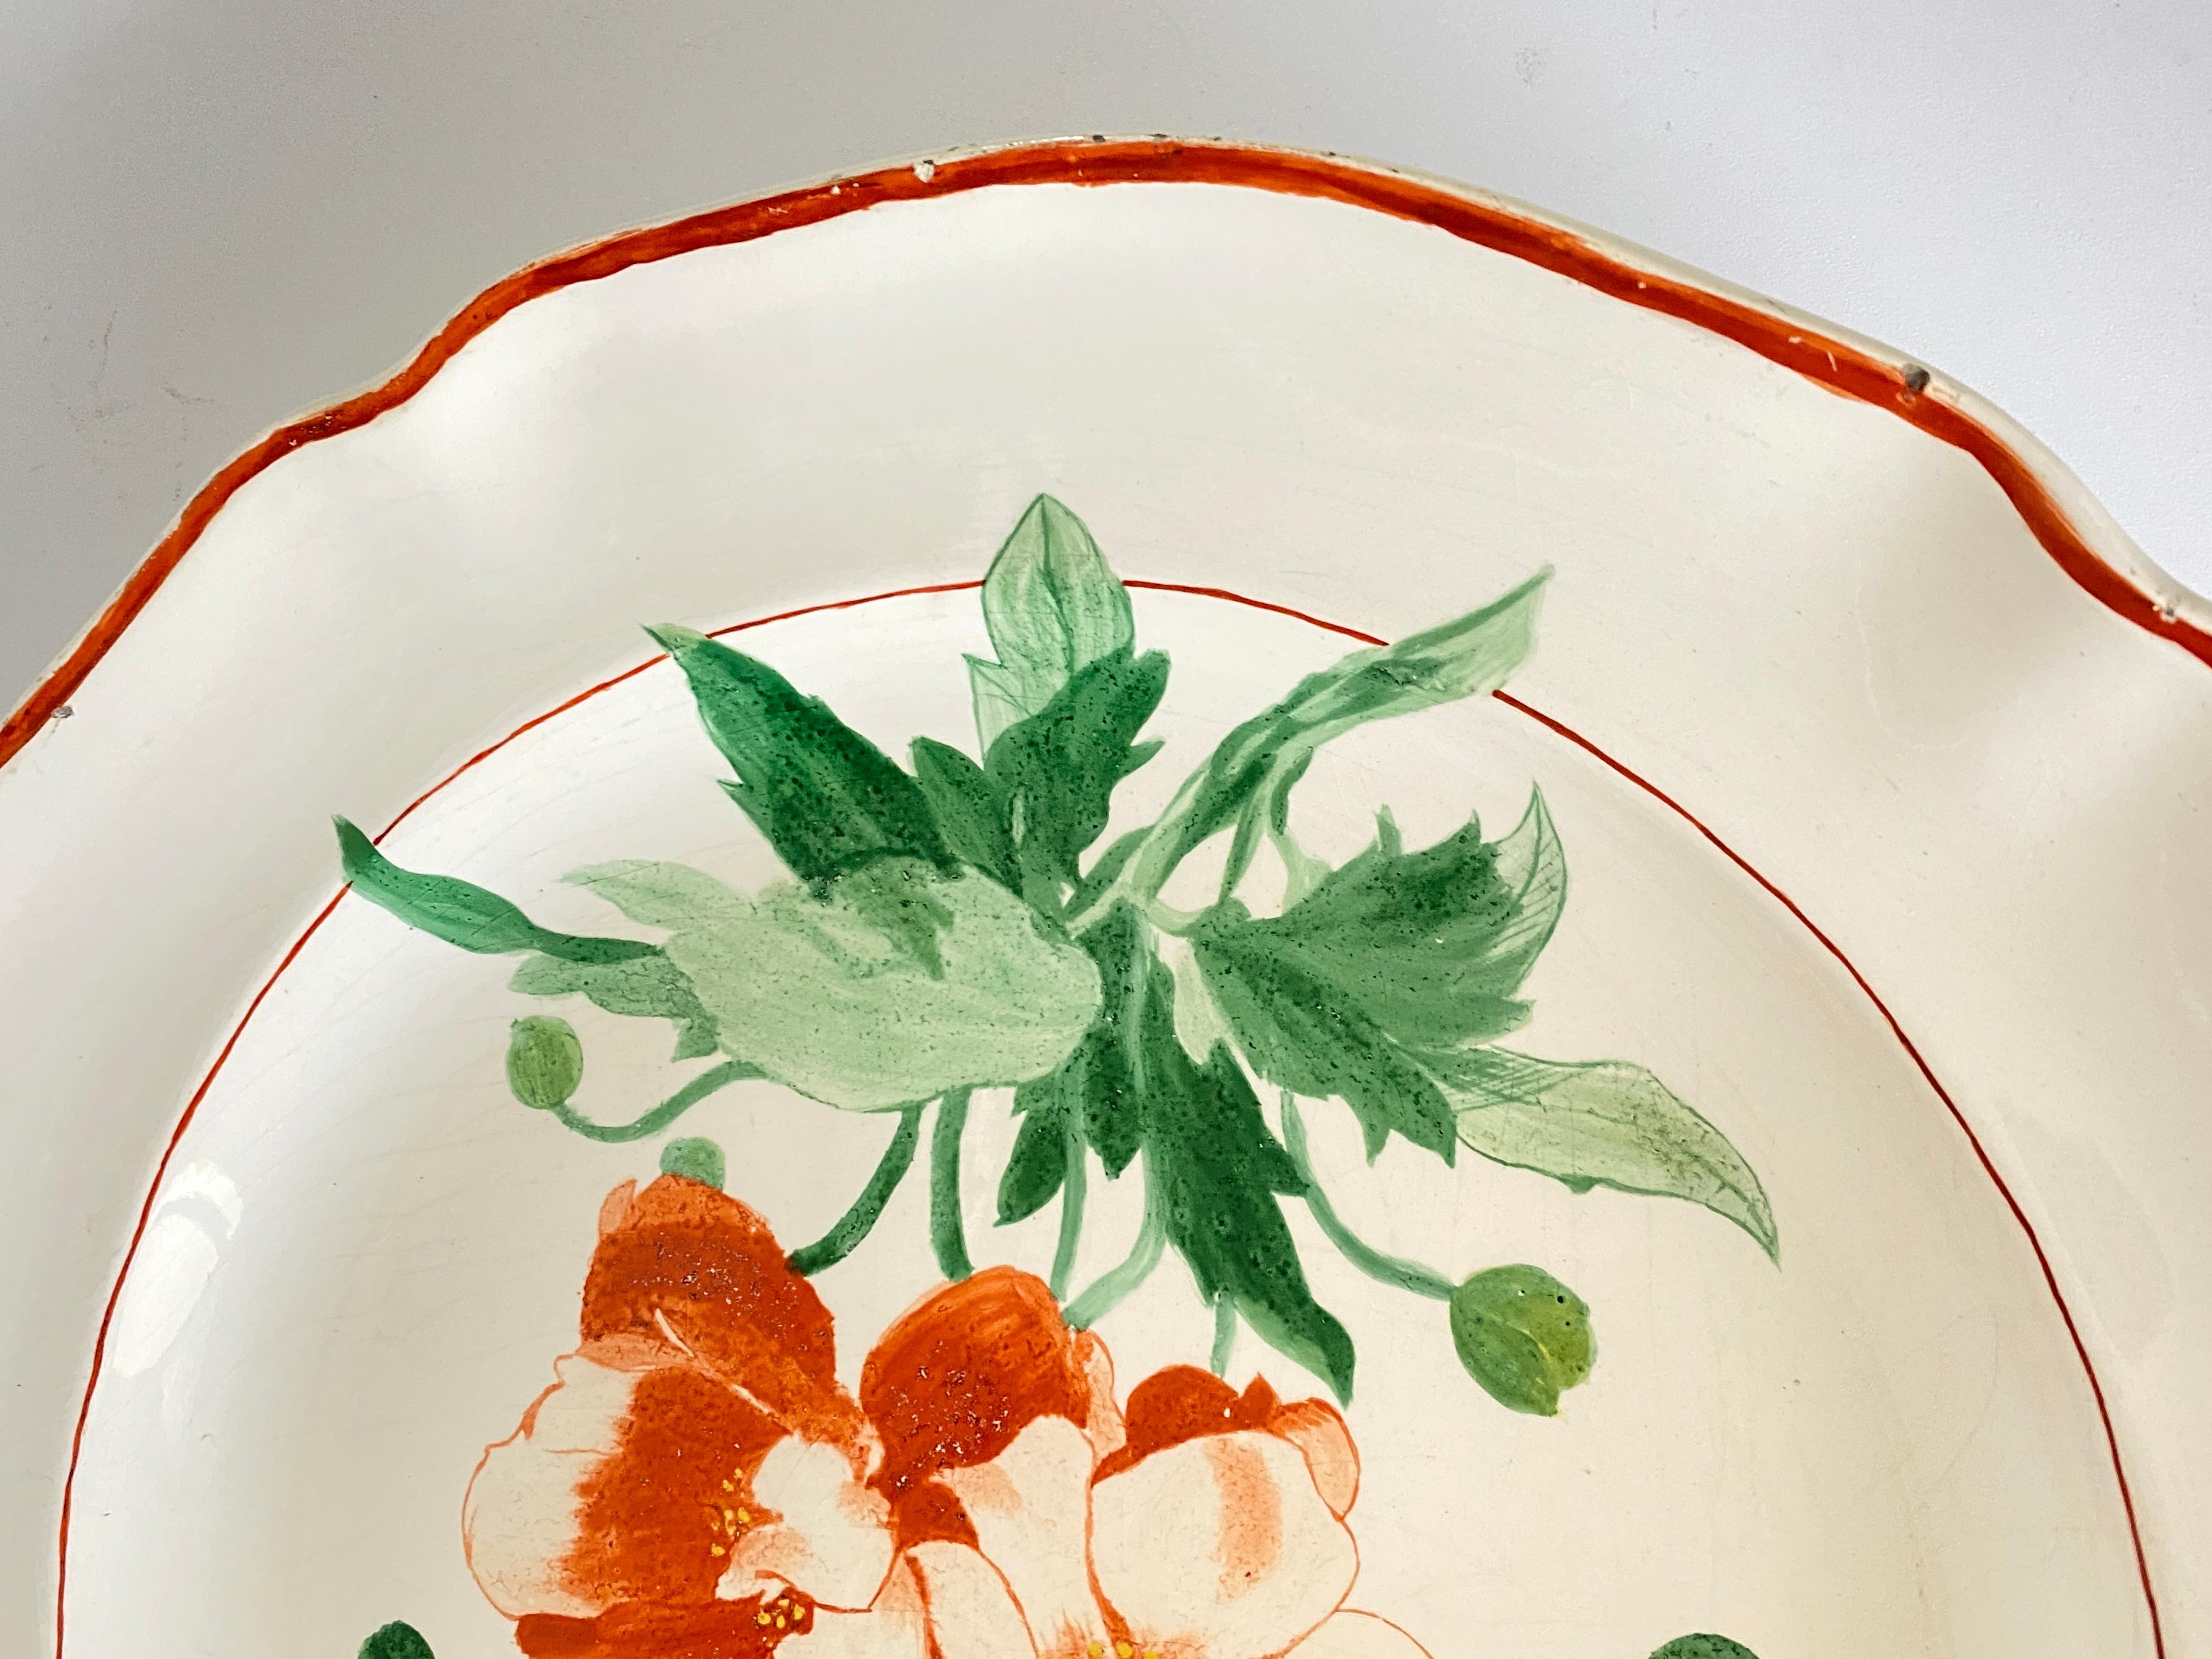 Vieux plat de Luneville. Ce plat est en faïence, et a été fabriqué en France, au cours du 19ème siècle.
Les couleurs sont le vert et le rouge, l'orange. Il est signé.